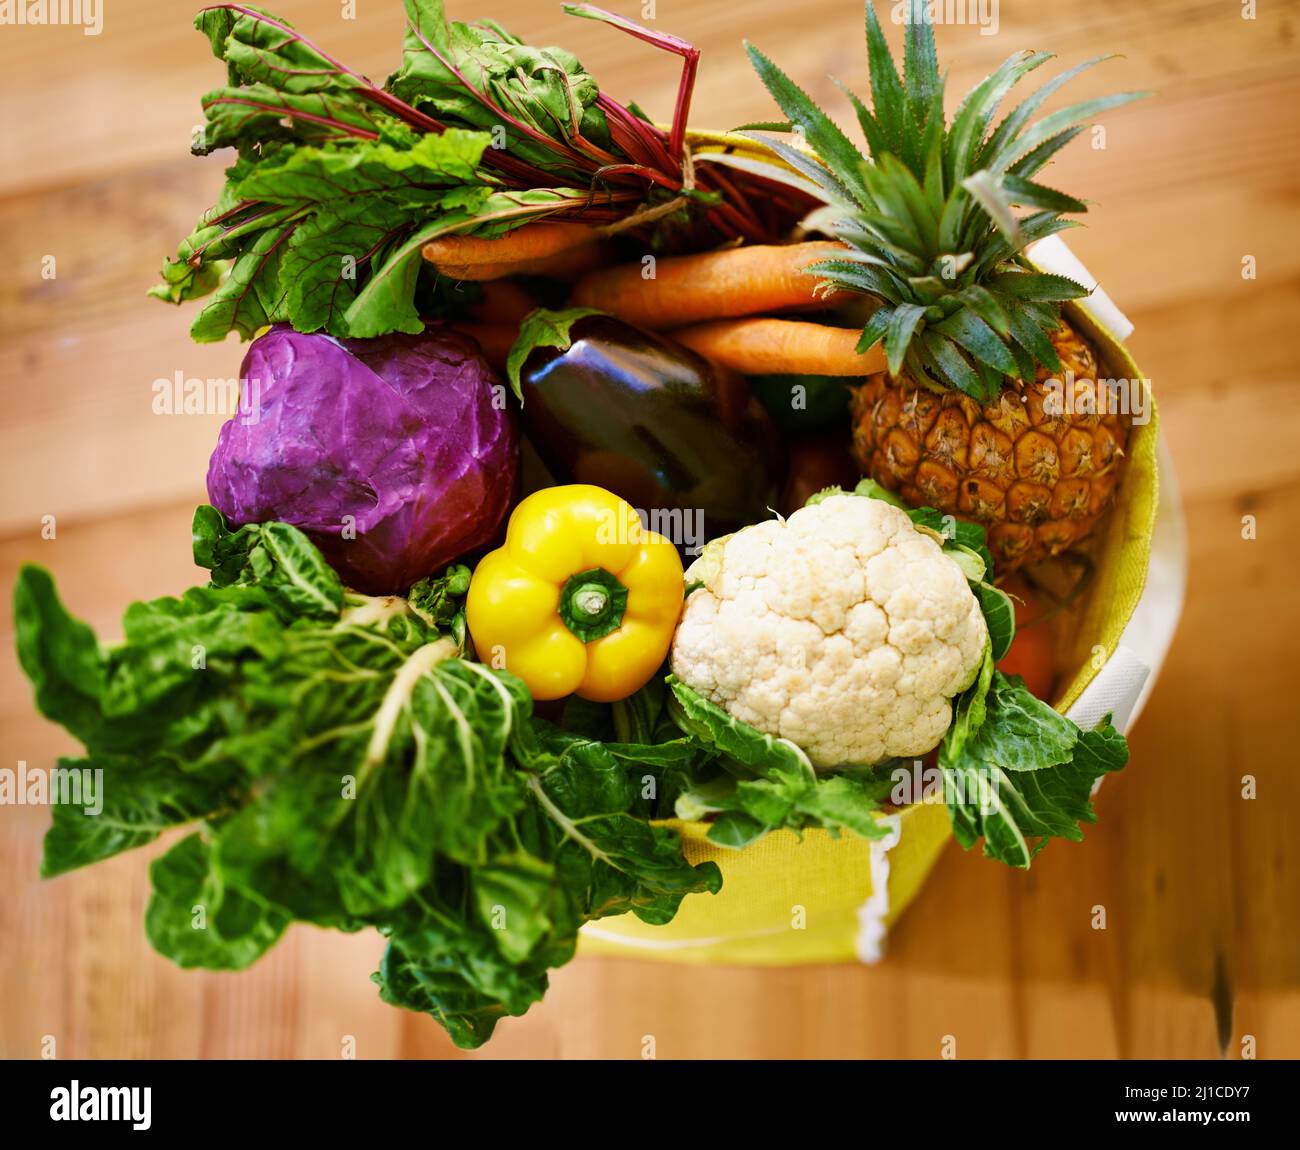 Holen Sie sich Ihre Grüns. Aufnahme einer Auswahl an Obst und Gemüse in einer Einkaufstasche. Stockfoto